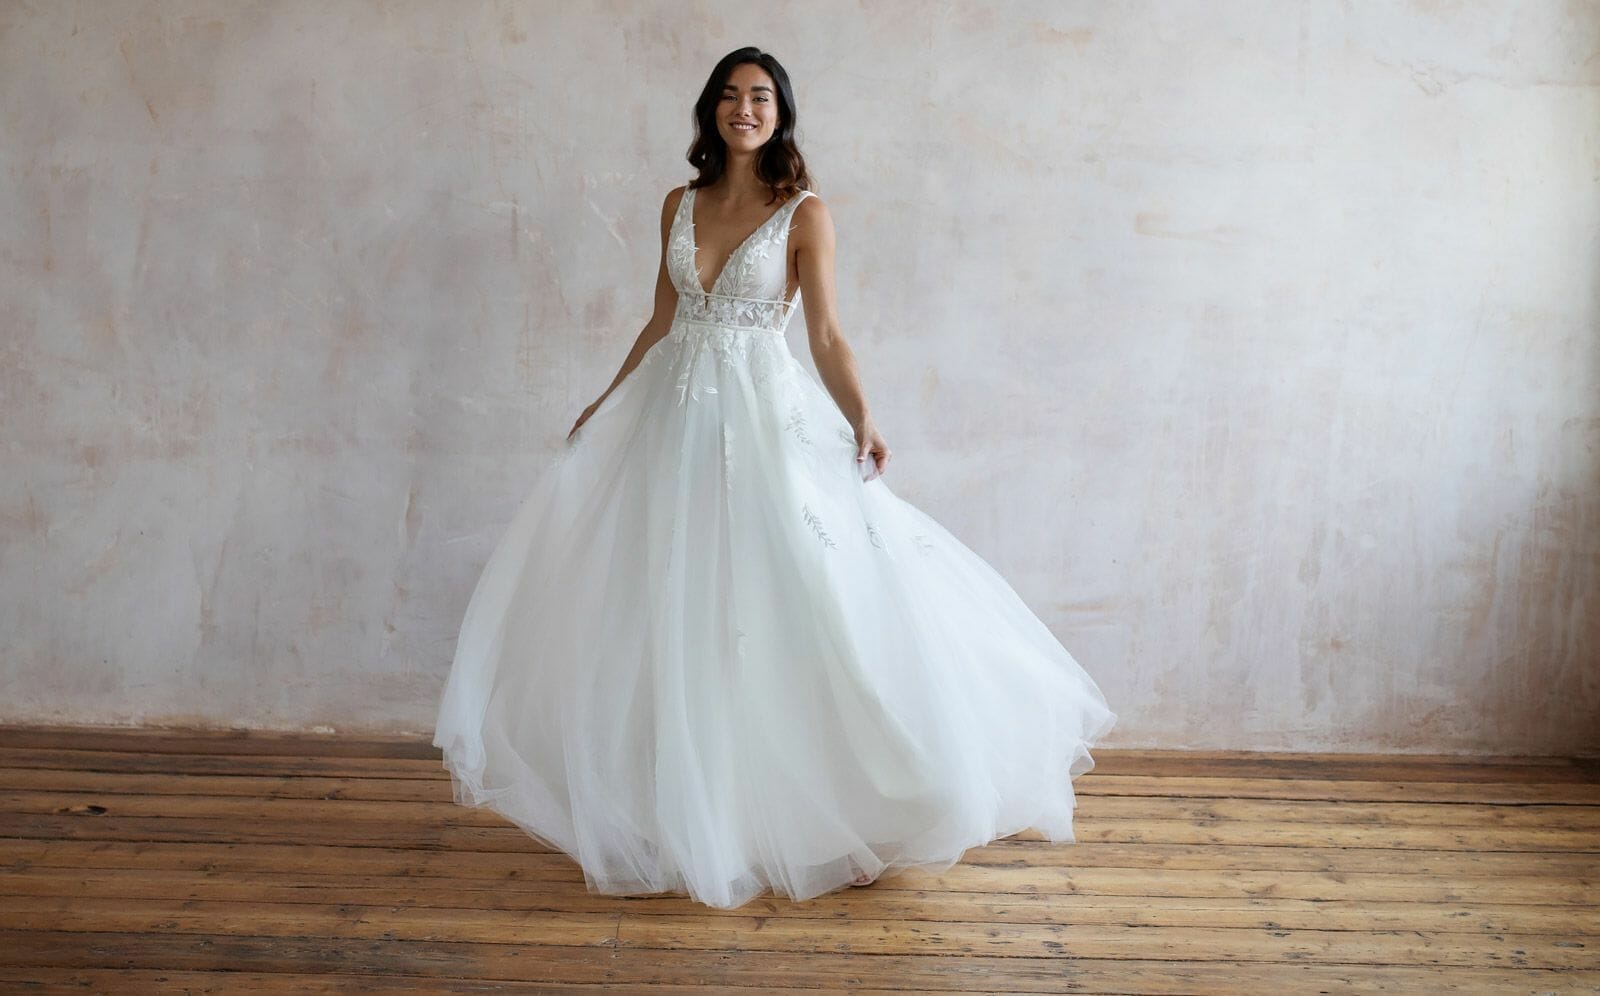 design a wedding dress